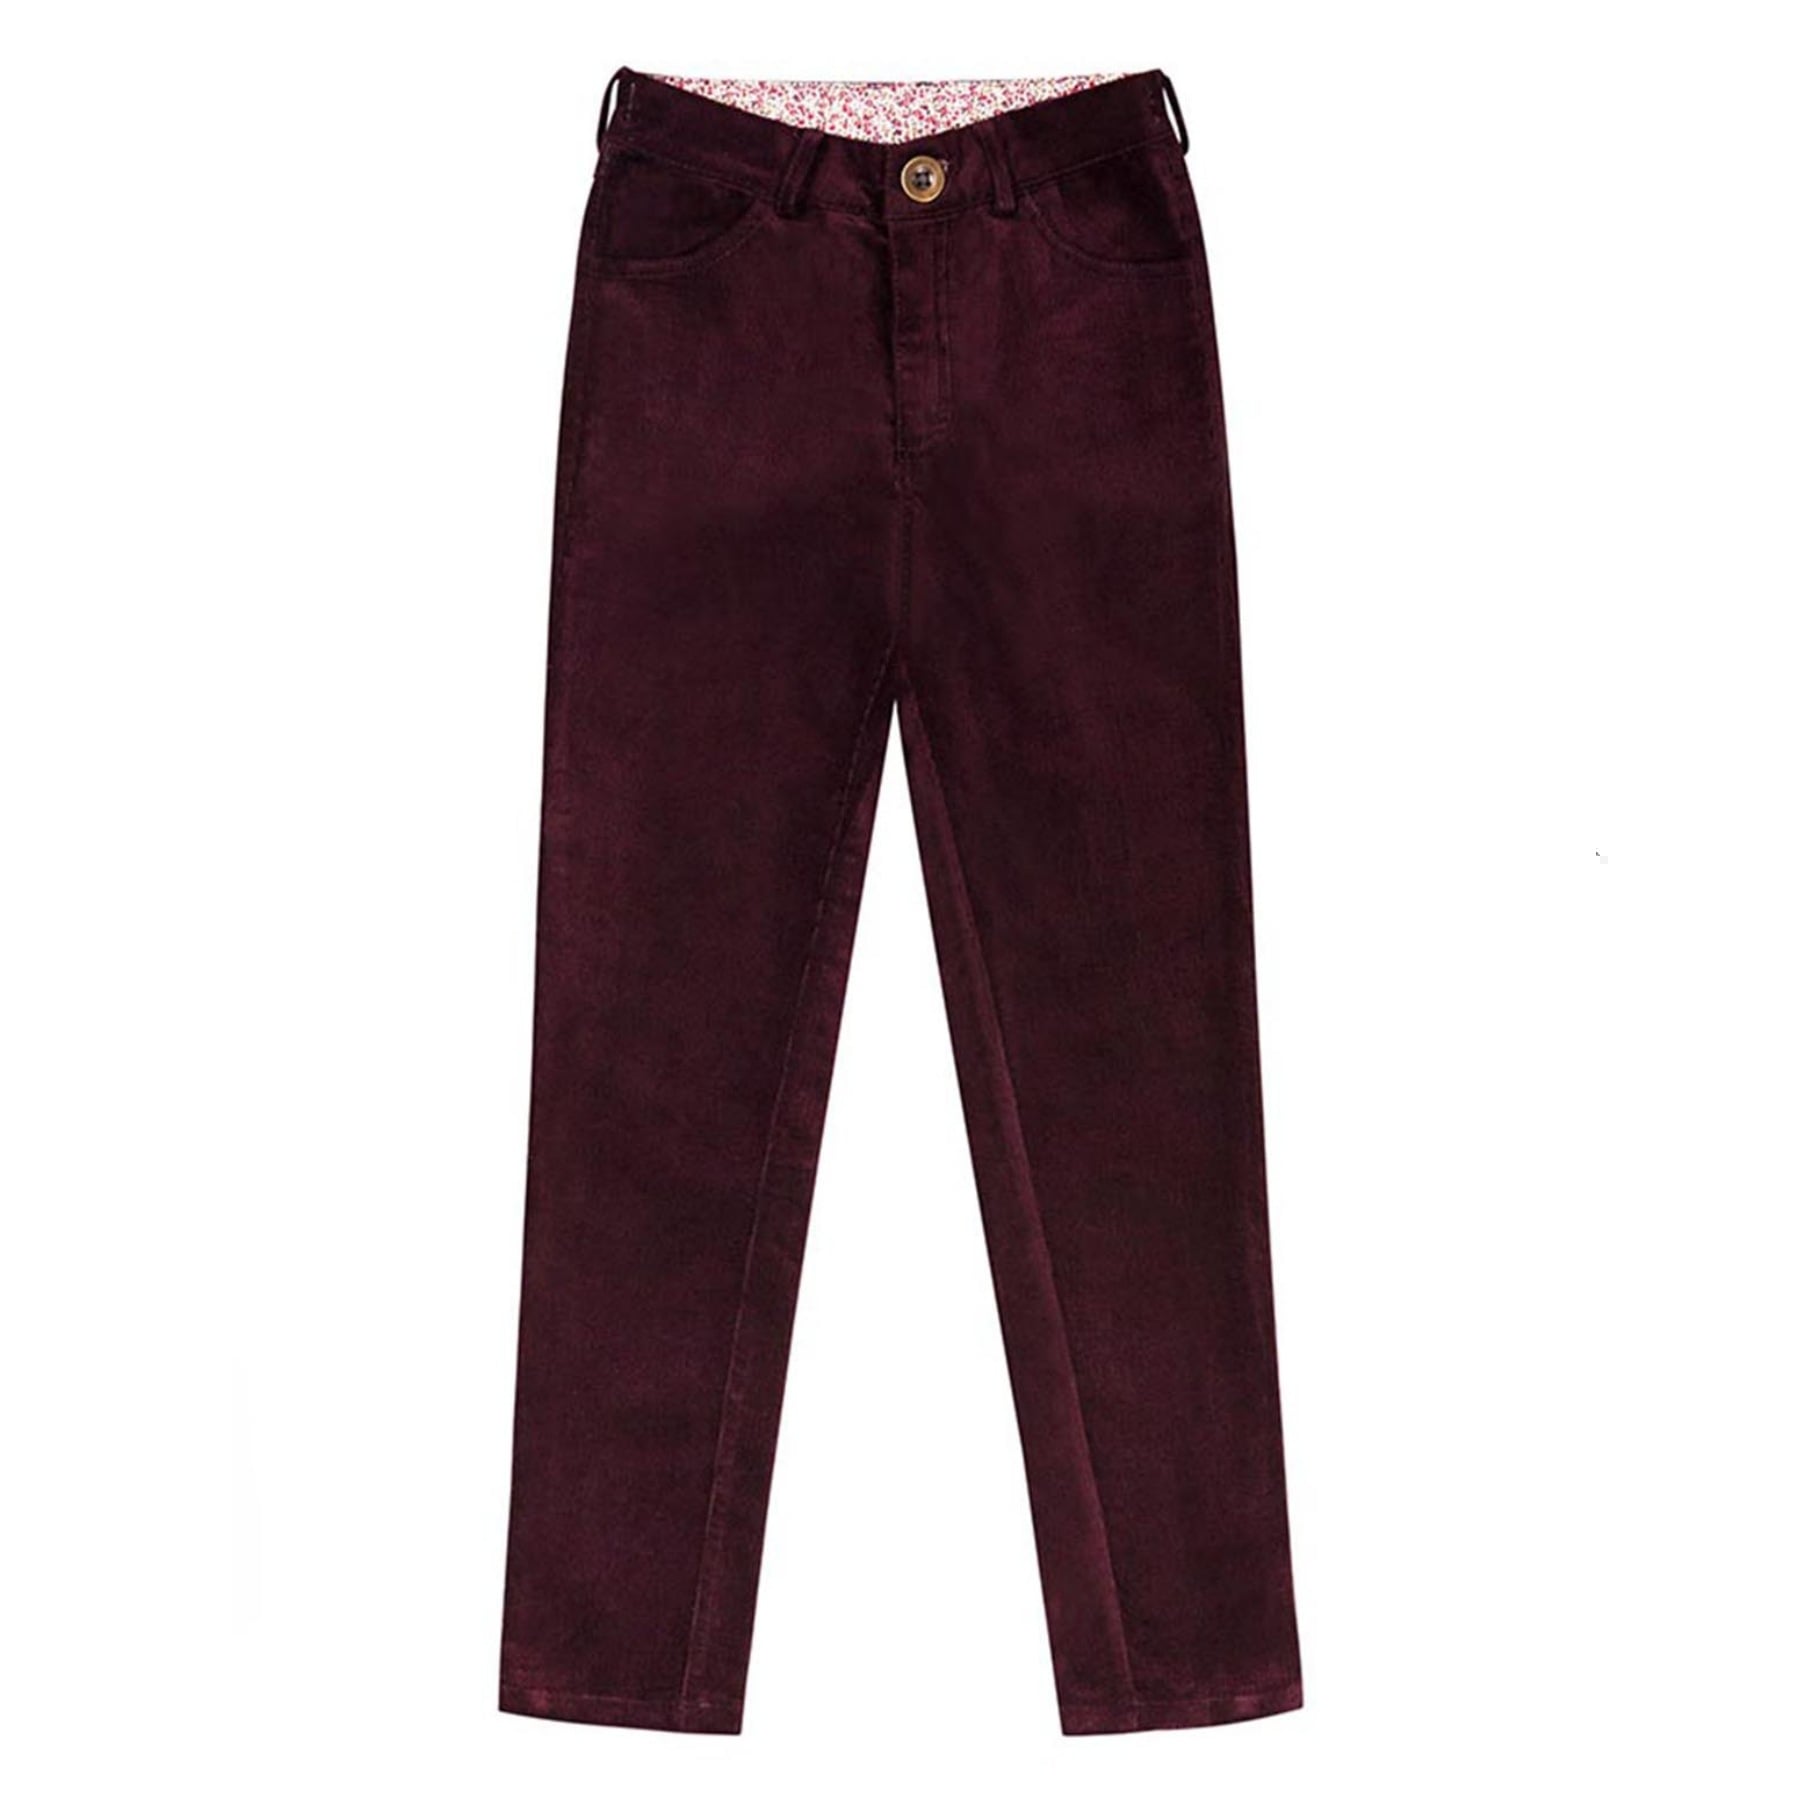 Joli pantalon bordeaux prune pour fille et fillettes de la marque de mode pour enfants La Faute à Voltaire